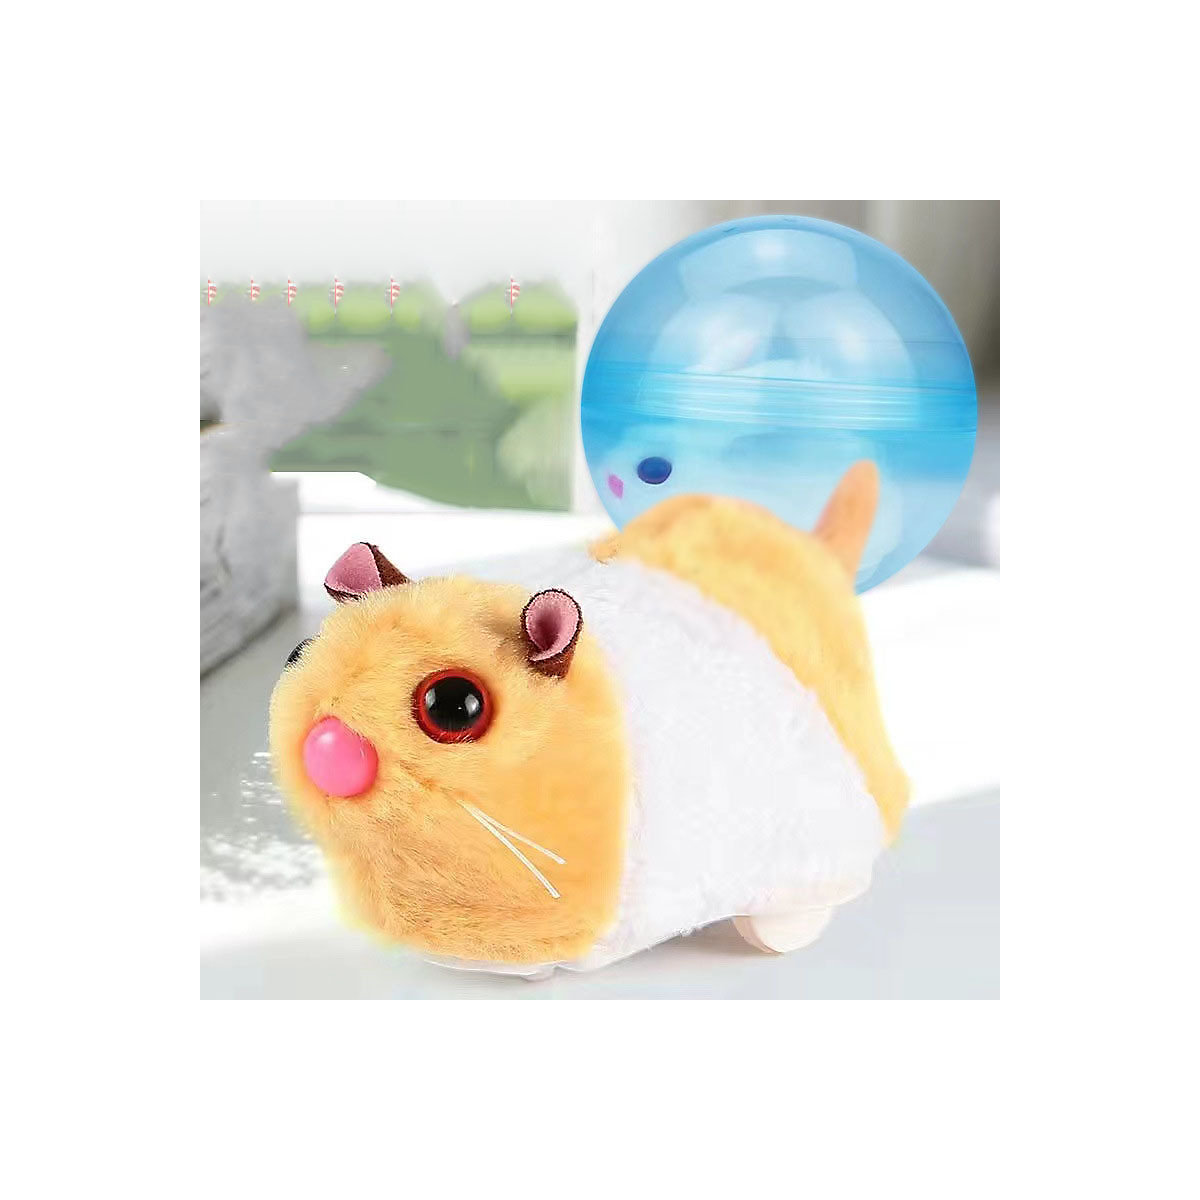 Decome Leuchtender Krabbelball Kinderspielzeug Simulierter elektrischer Hase mit Rollender Hamster Kugel Spielzeug